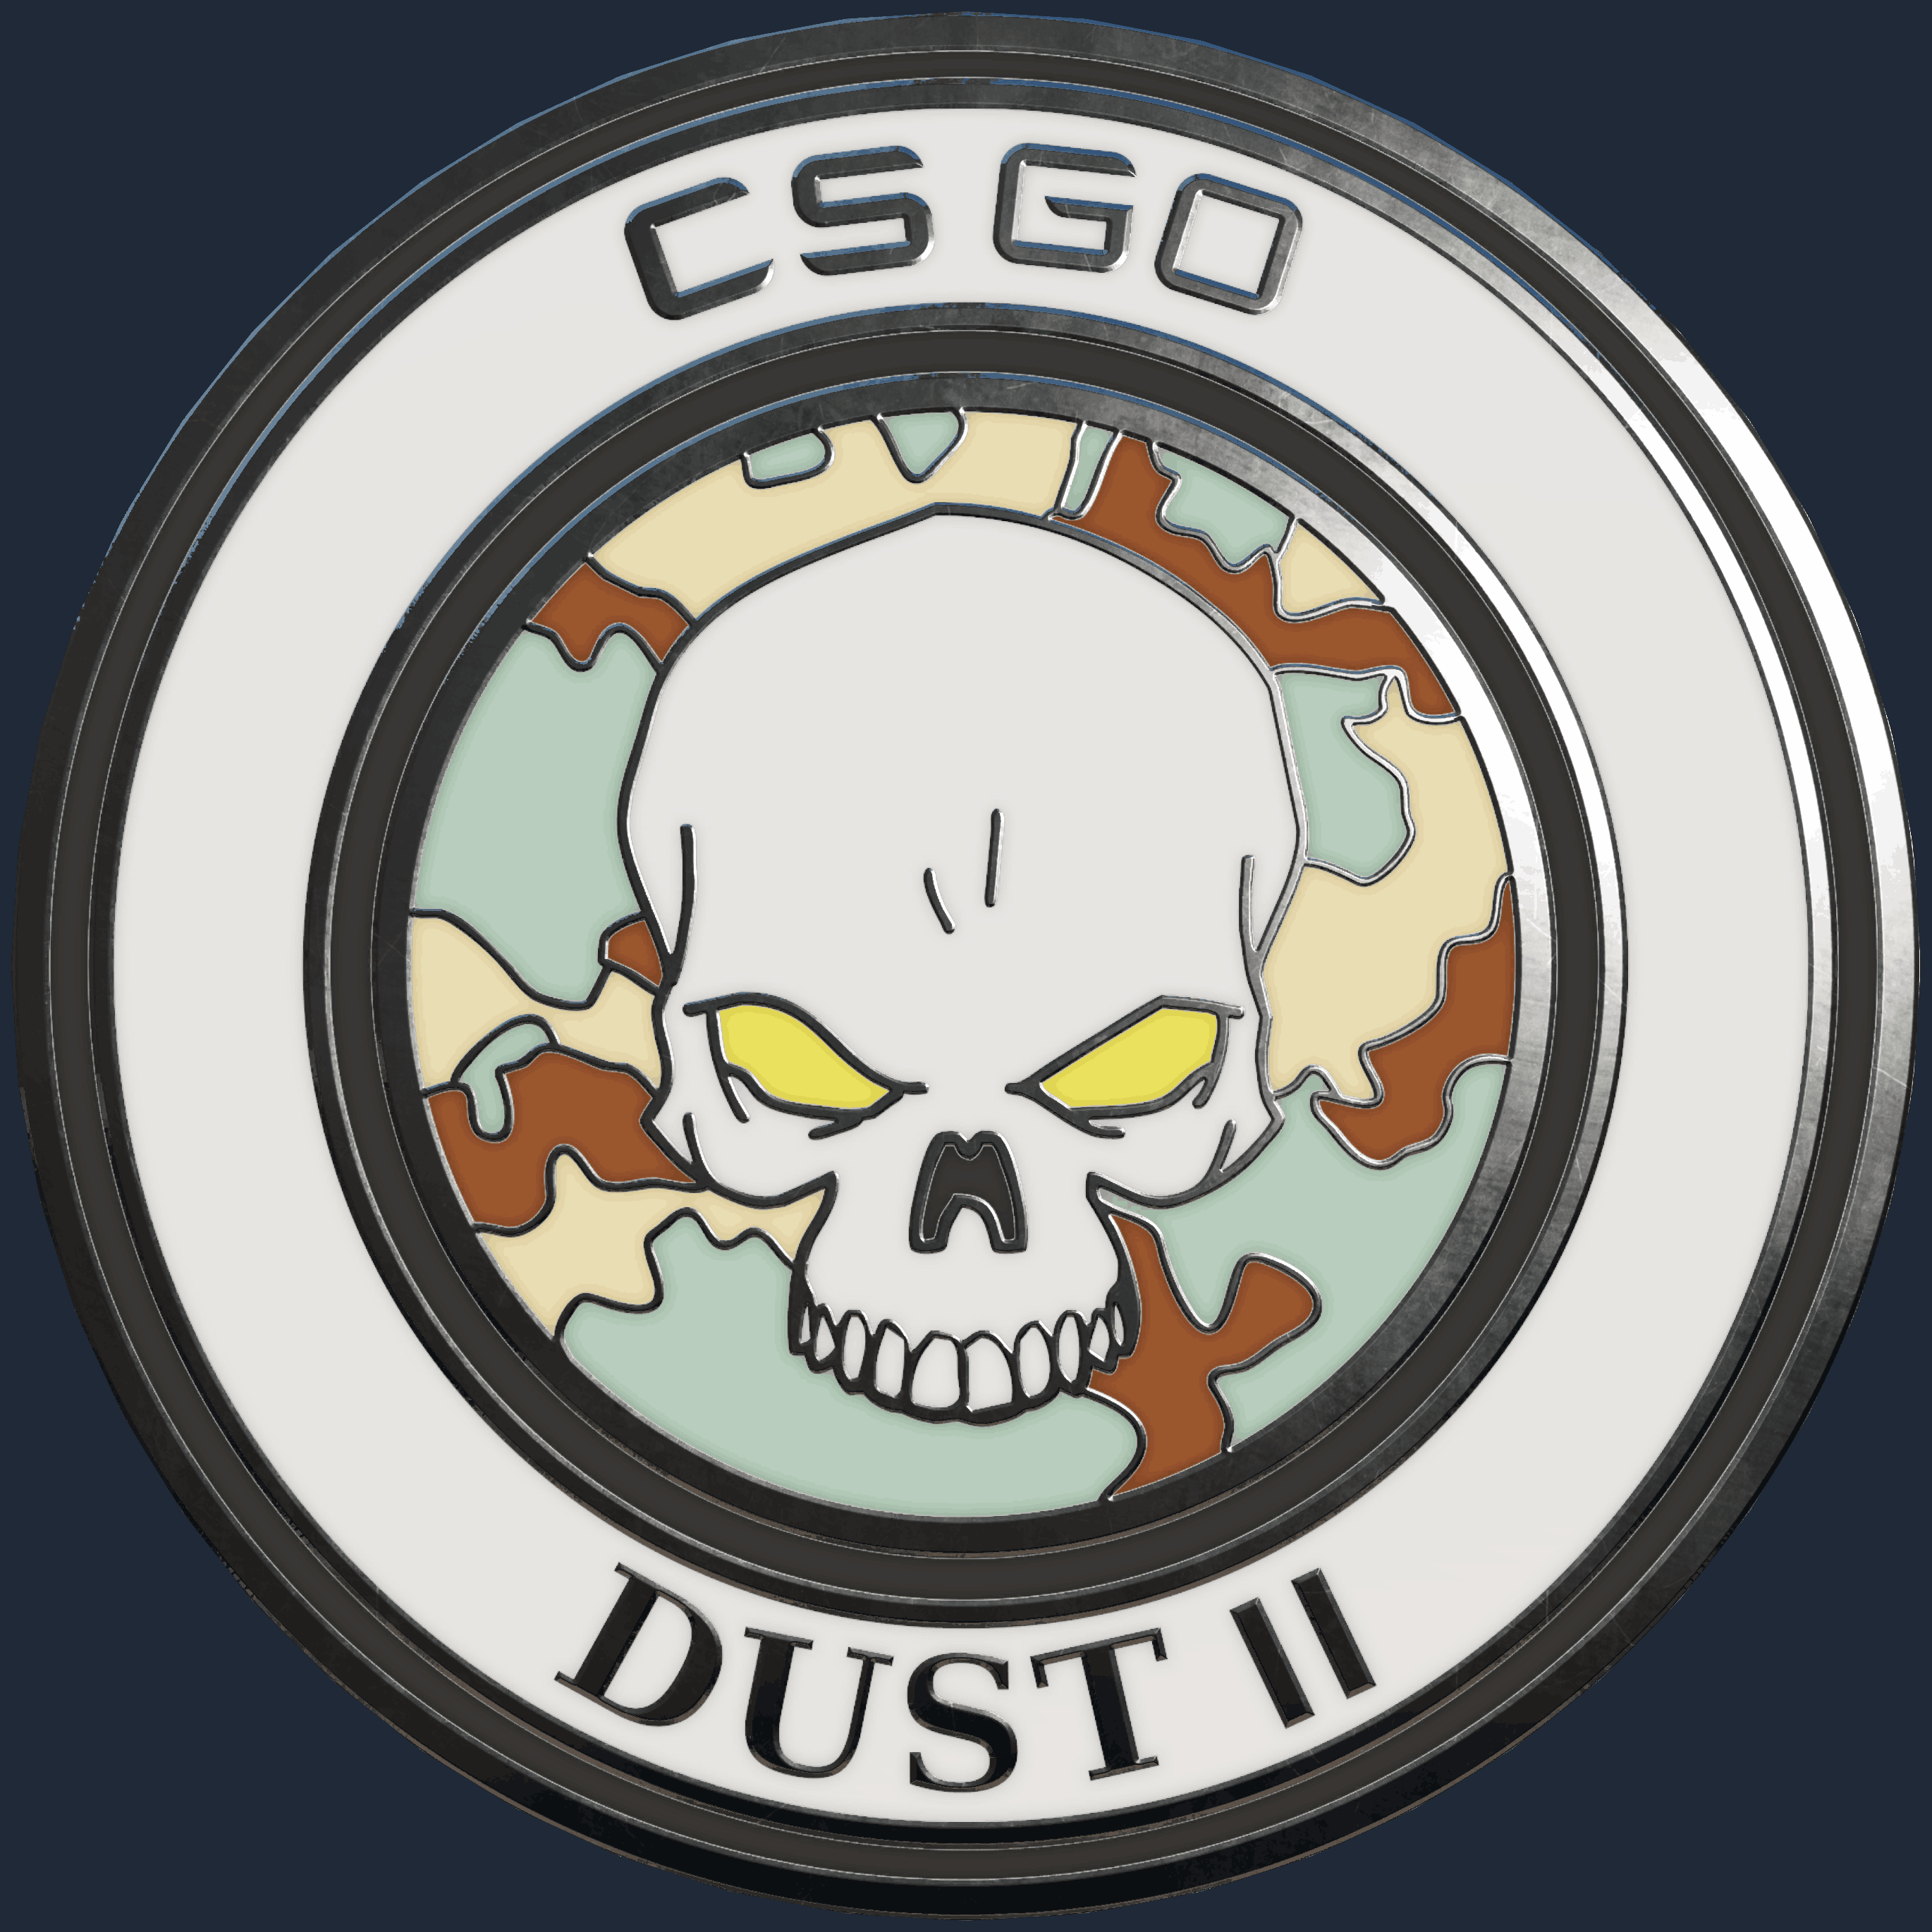 Dust II Pin Screenshot